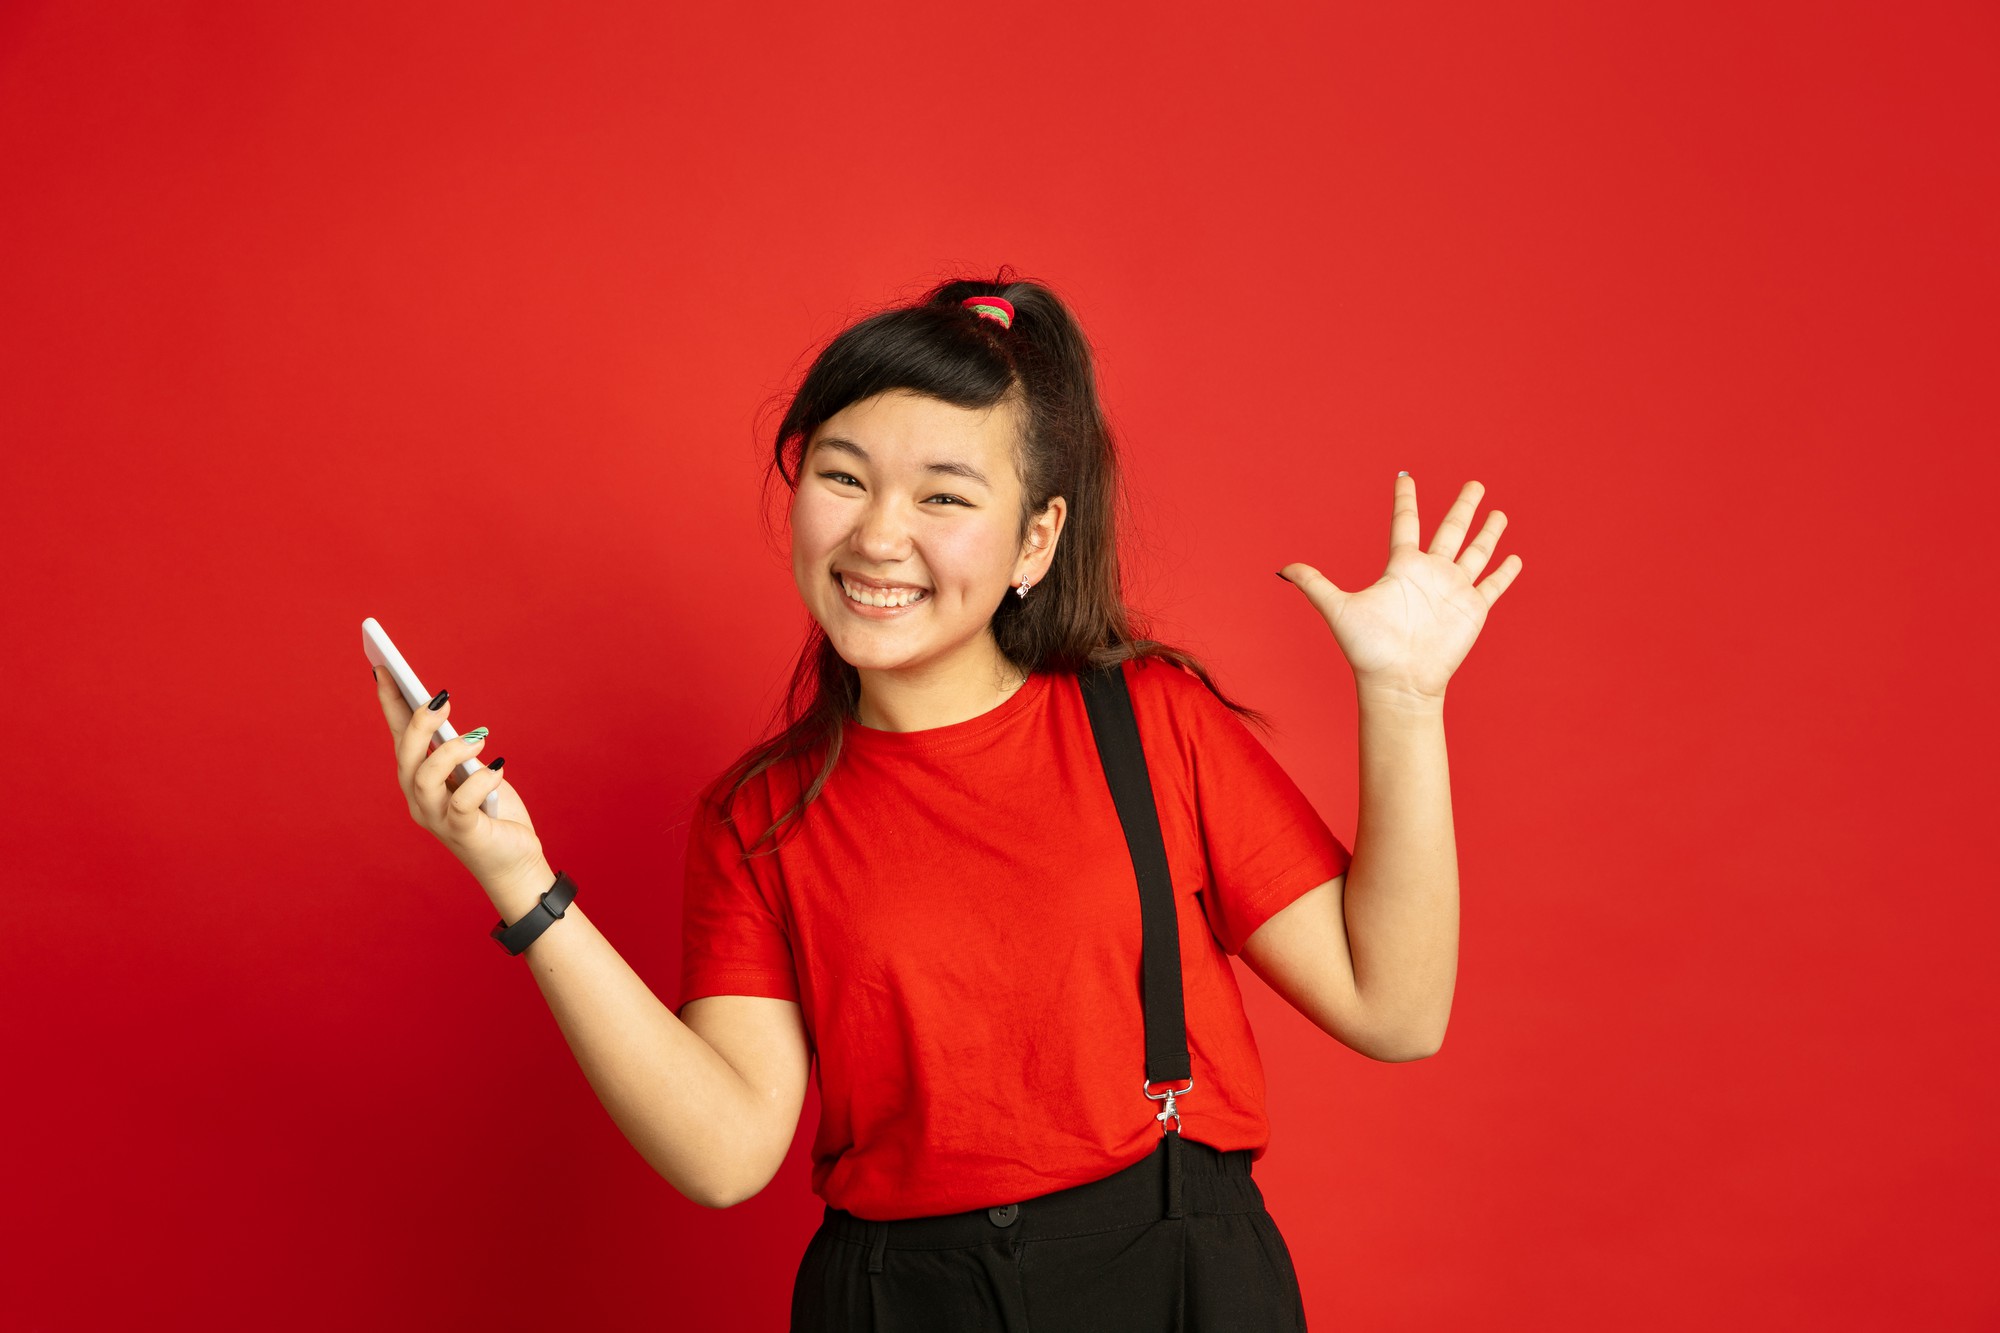 Retrato do adolescente asiático isolado no fundo vermelho do estúdio. Bela modelo Moreno feminino em estilo casual. Conceito de emoções humanas, expressão facial, vendas, anúncio. Feliz, segurando o smartphone.